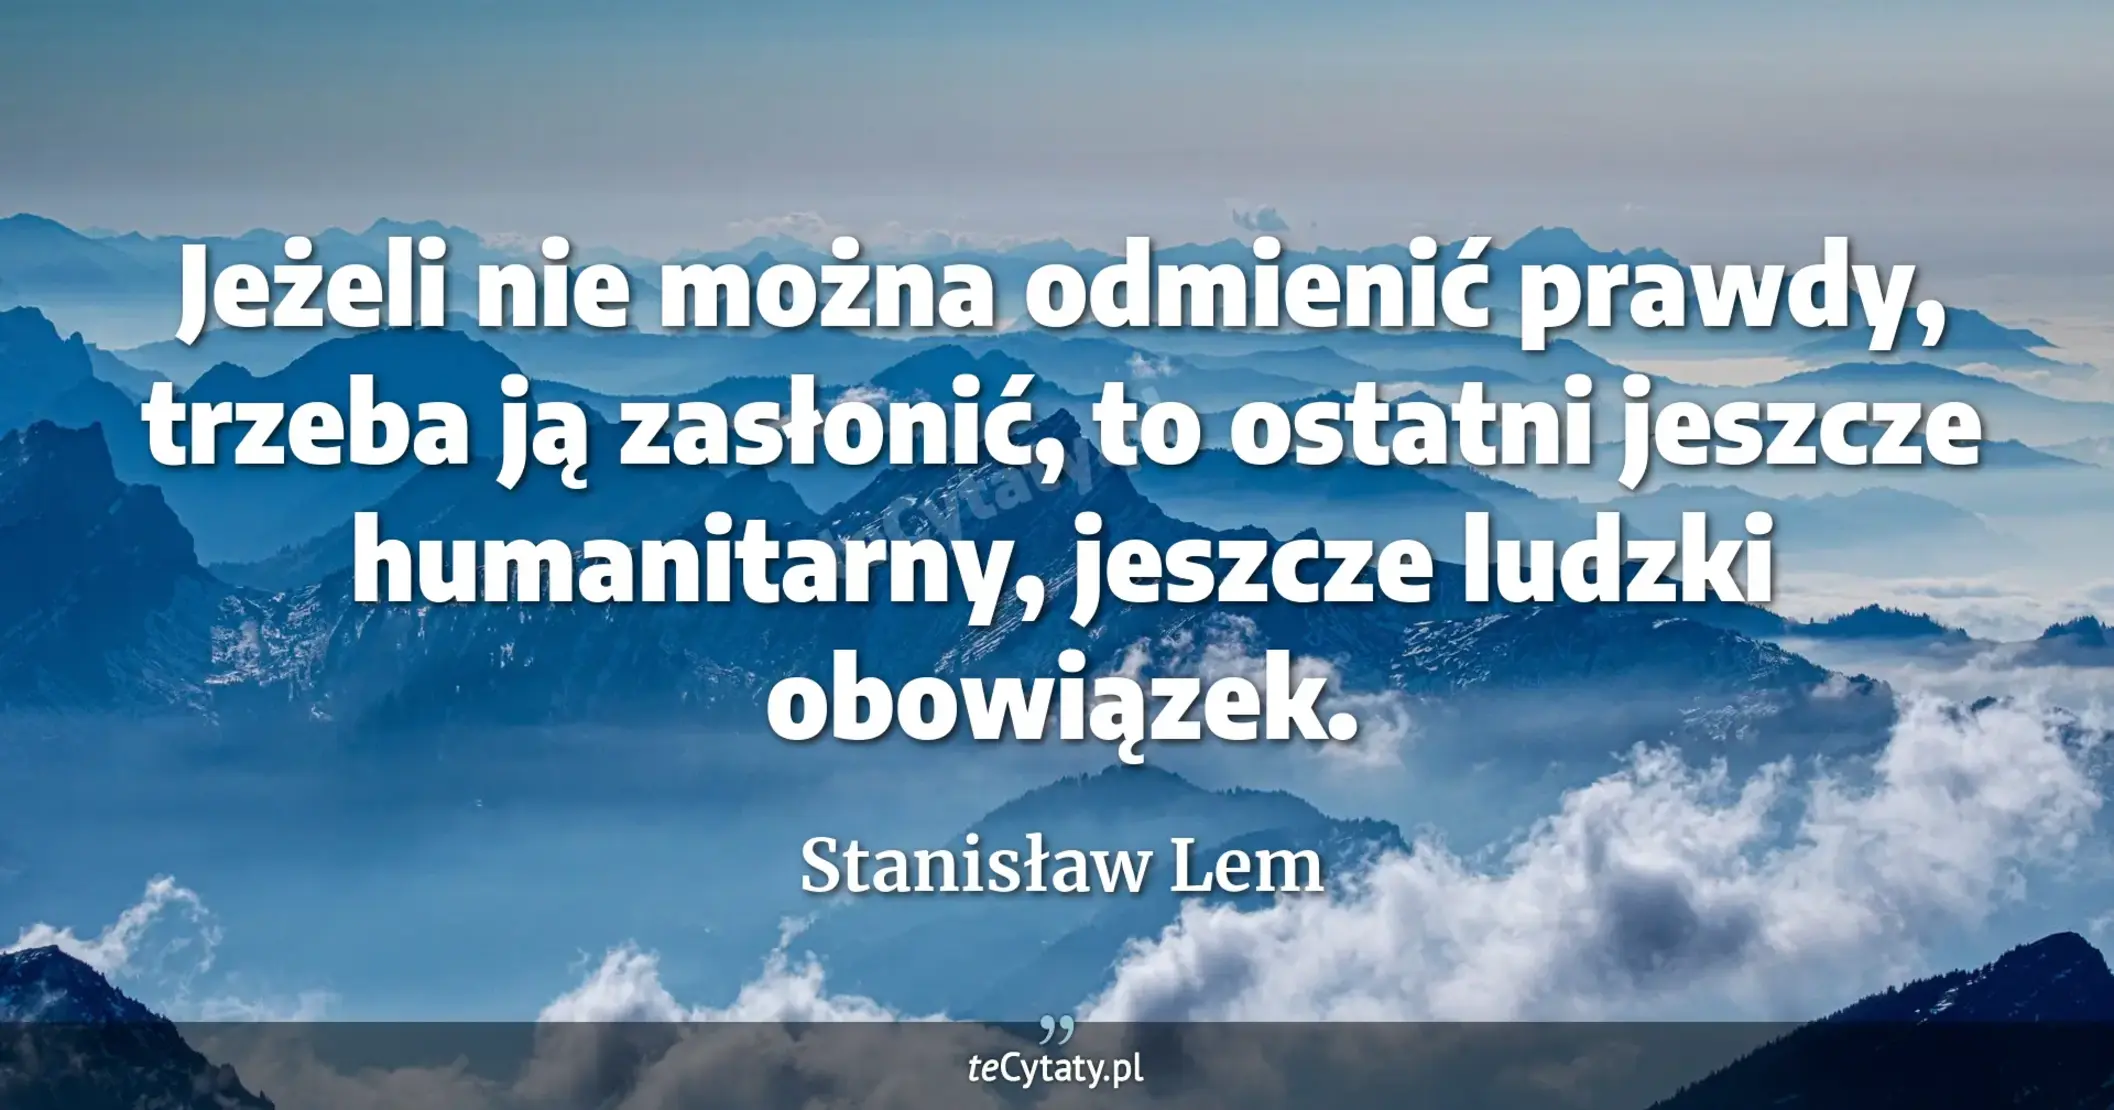 Jeżeli nie można odmienić prawdy, trzeba ją zasłonić, to ostatni jeszcze humanitarny, jeszcze ludzki obowiązek. - Stanisław Lem